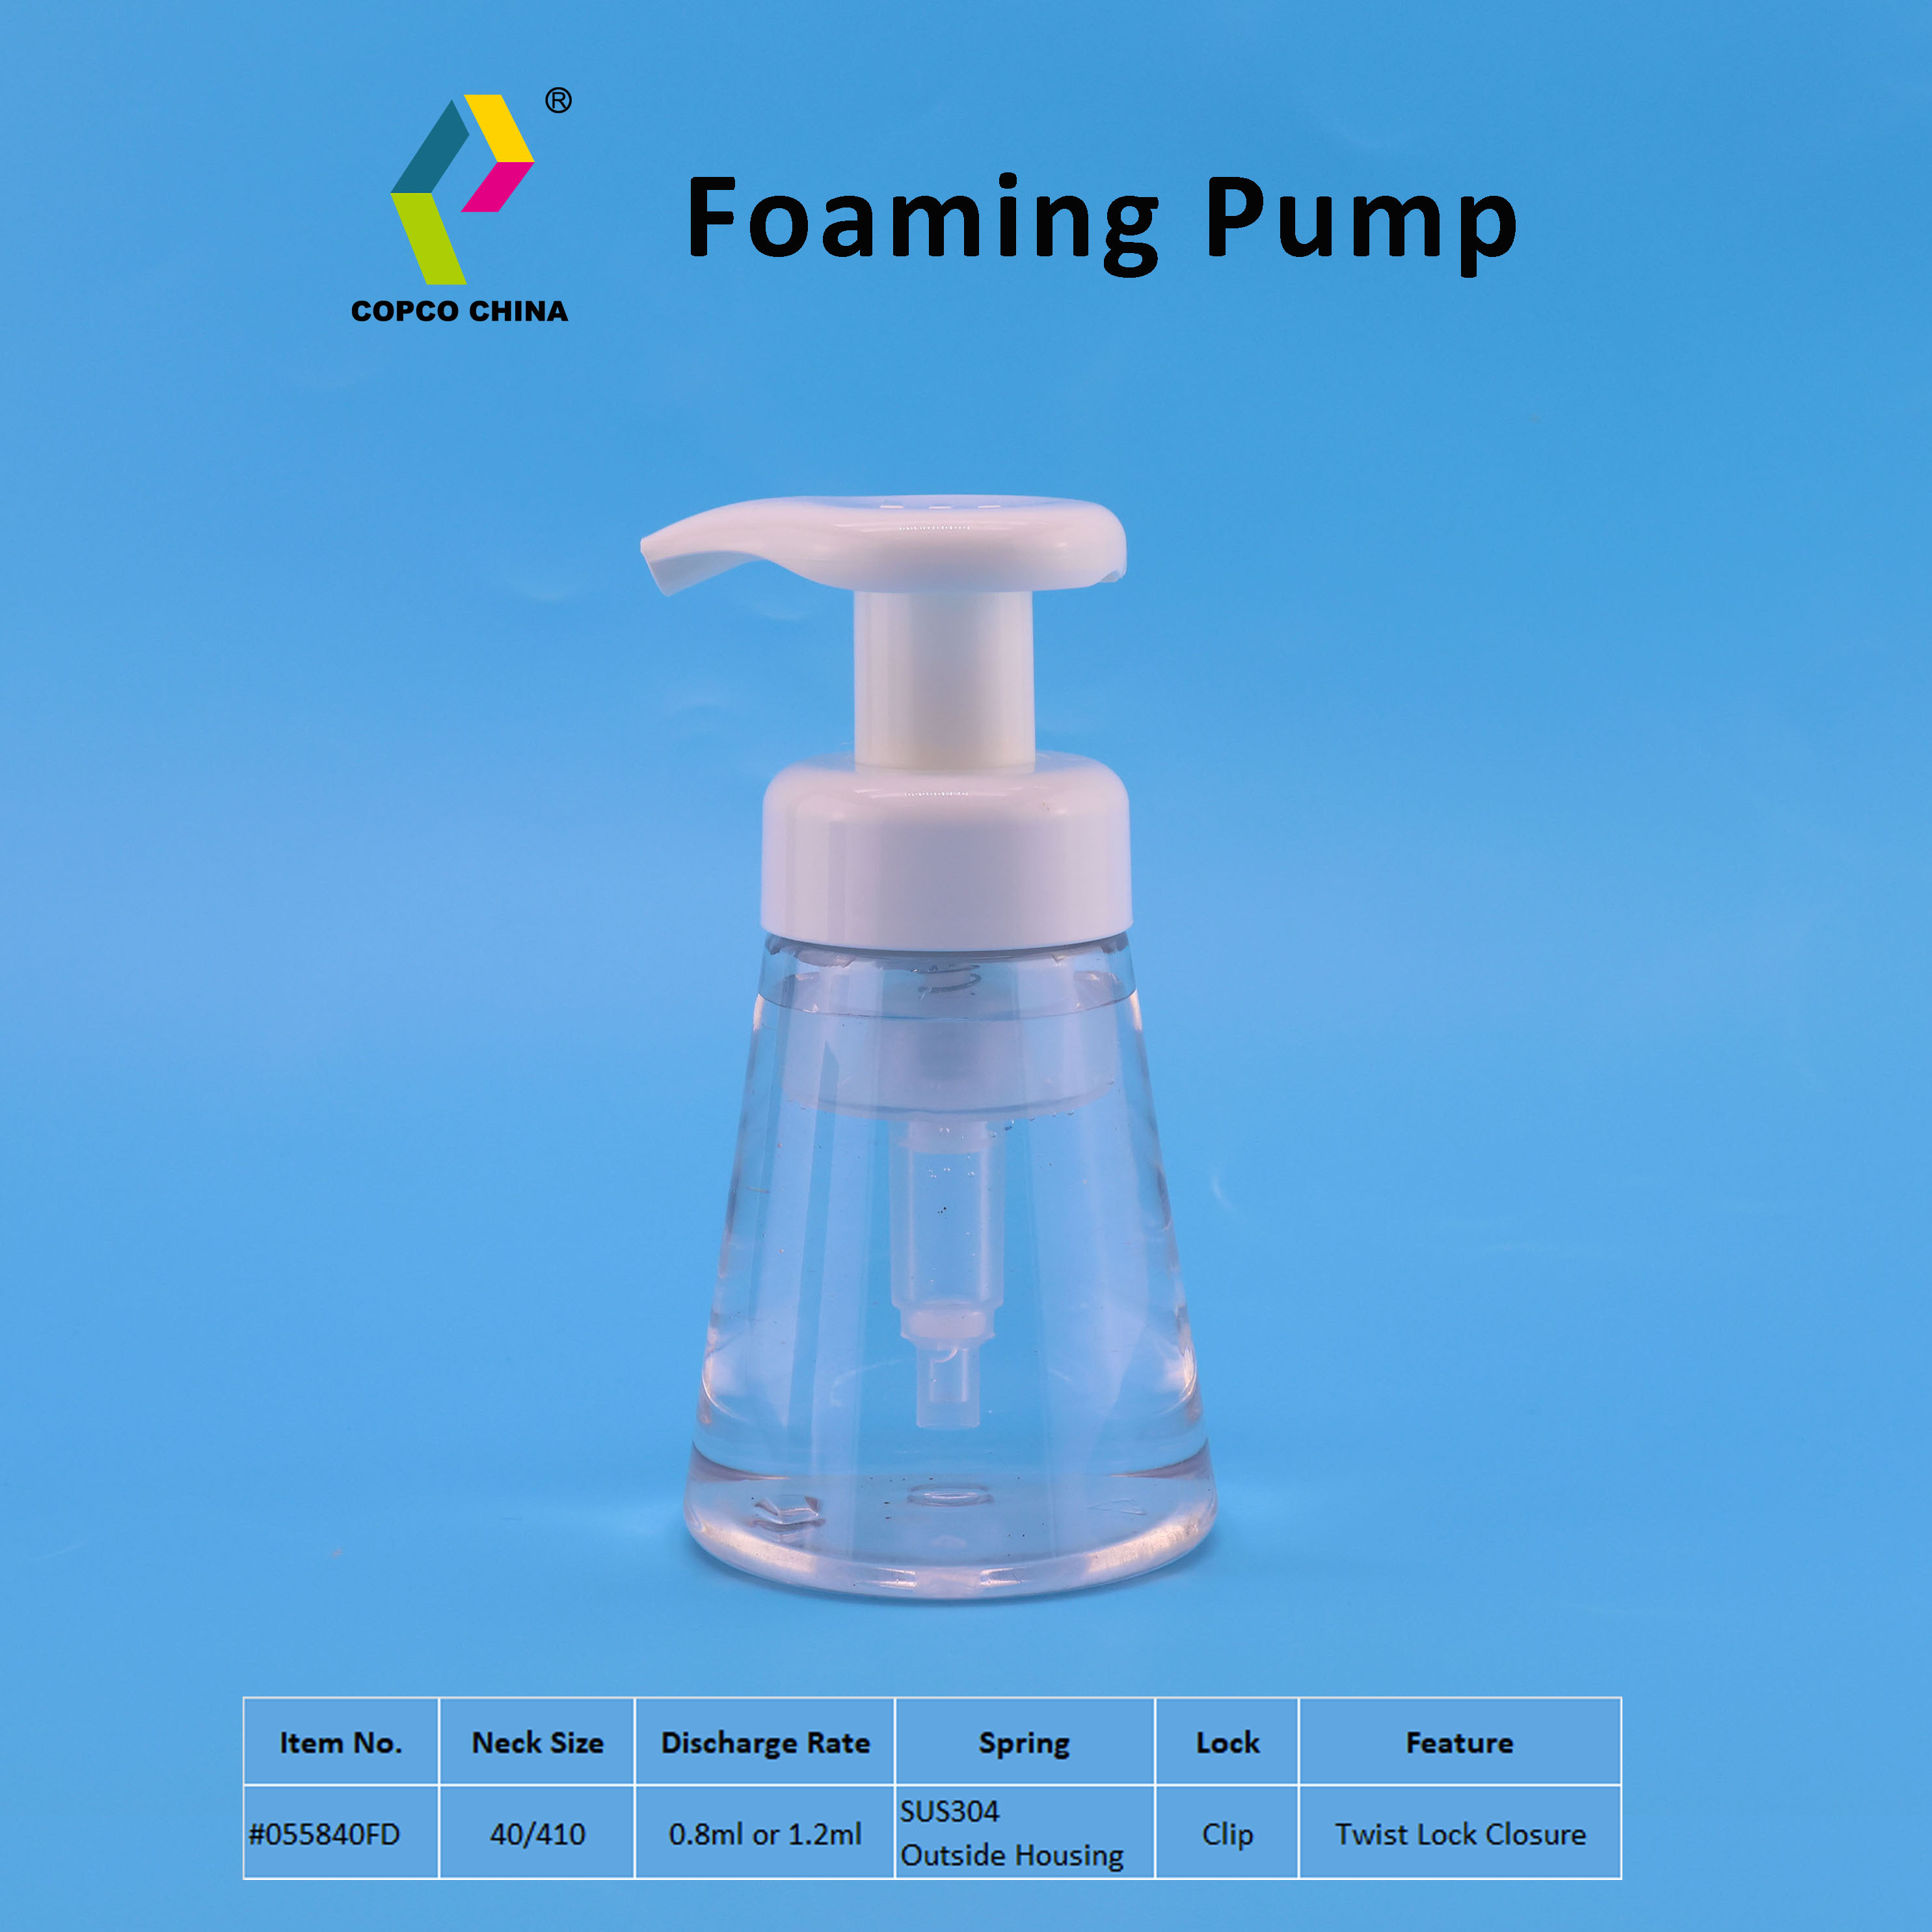 Foaming Pump #055840FD-with bottle.jpg